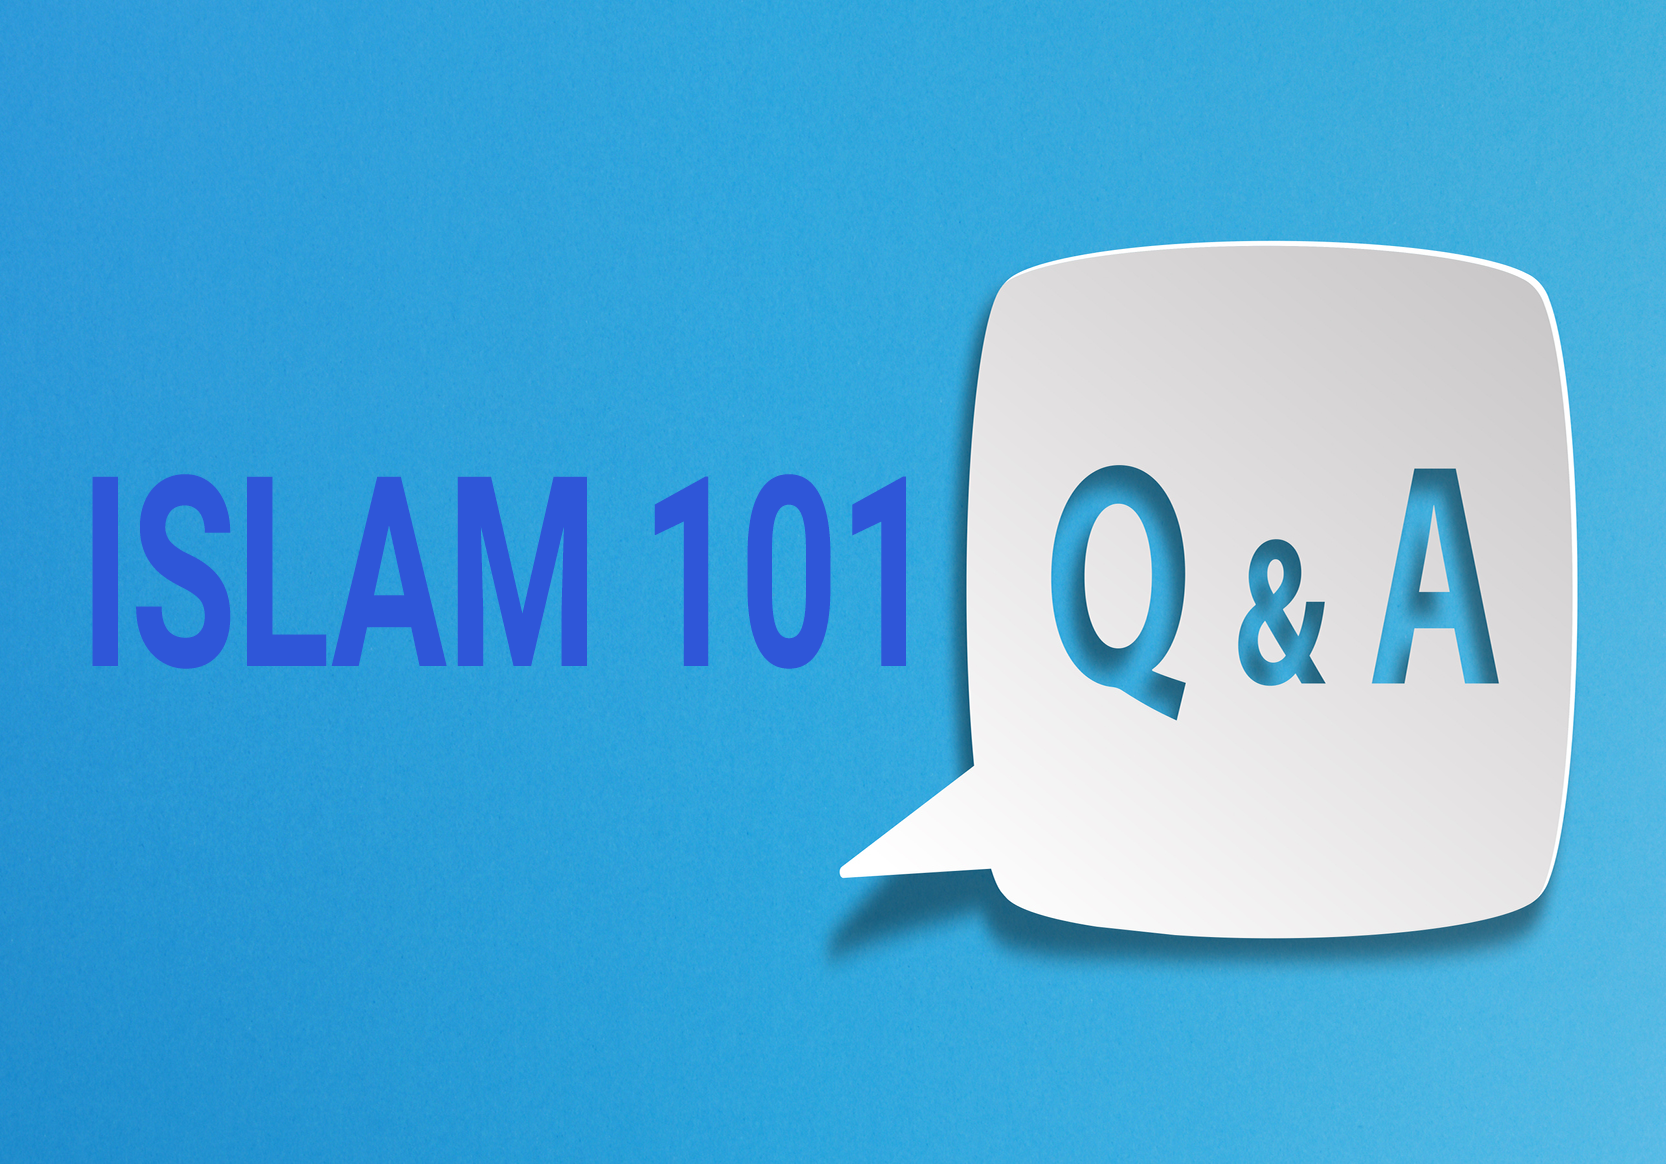 Islam Q&A